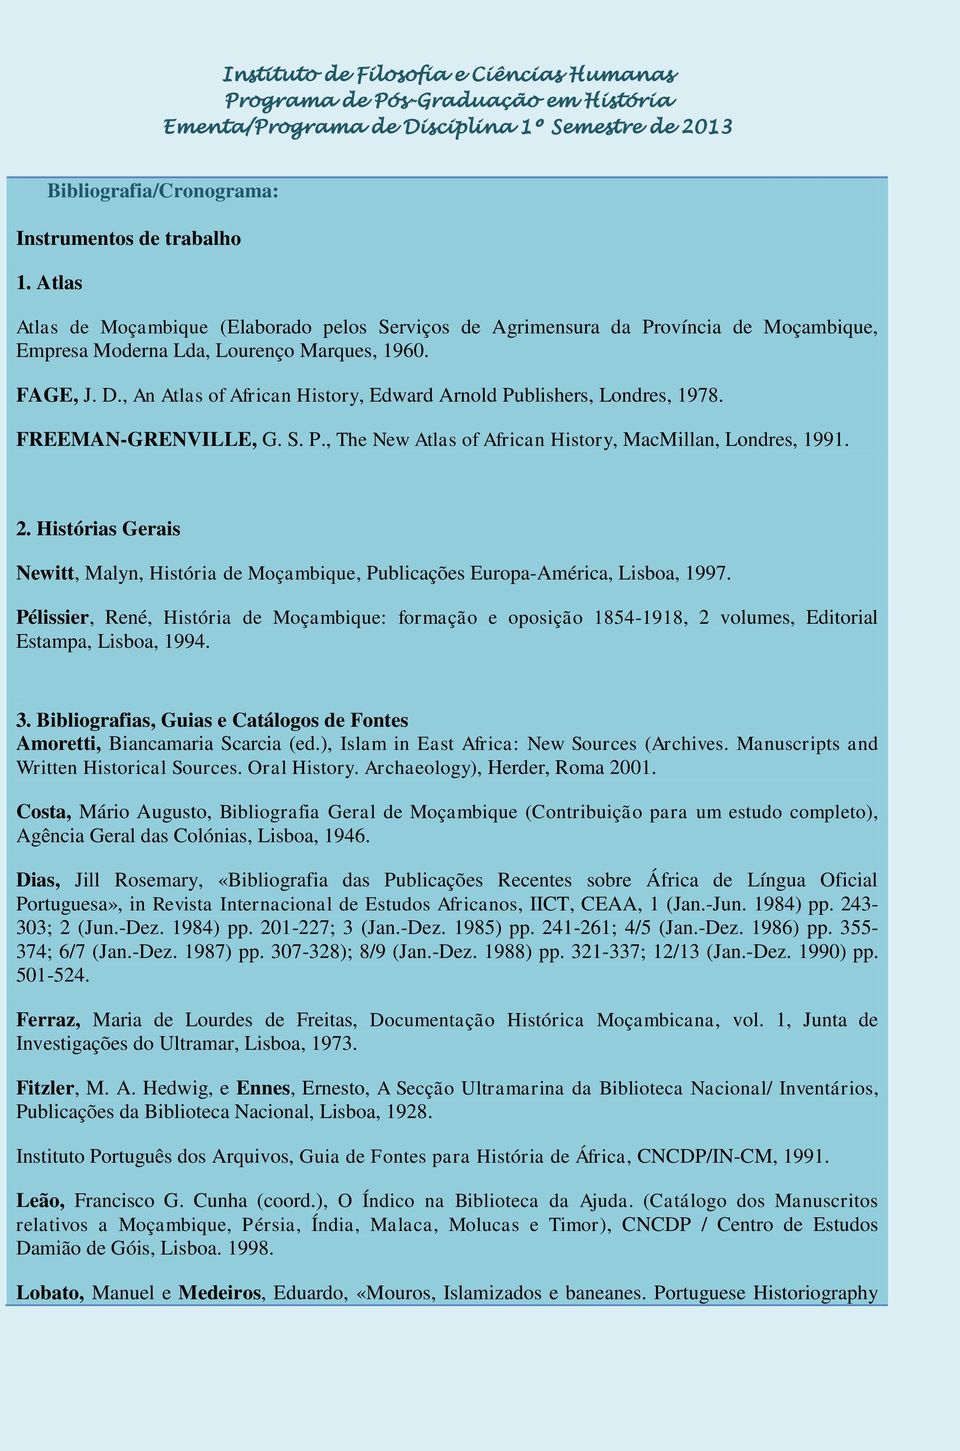 Histórias Gerais Newitt, Malyn, História de Moçambique, Publicações Europa-América, Lisboa, 1997.